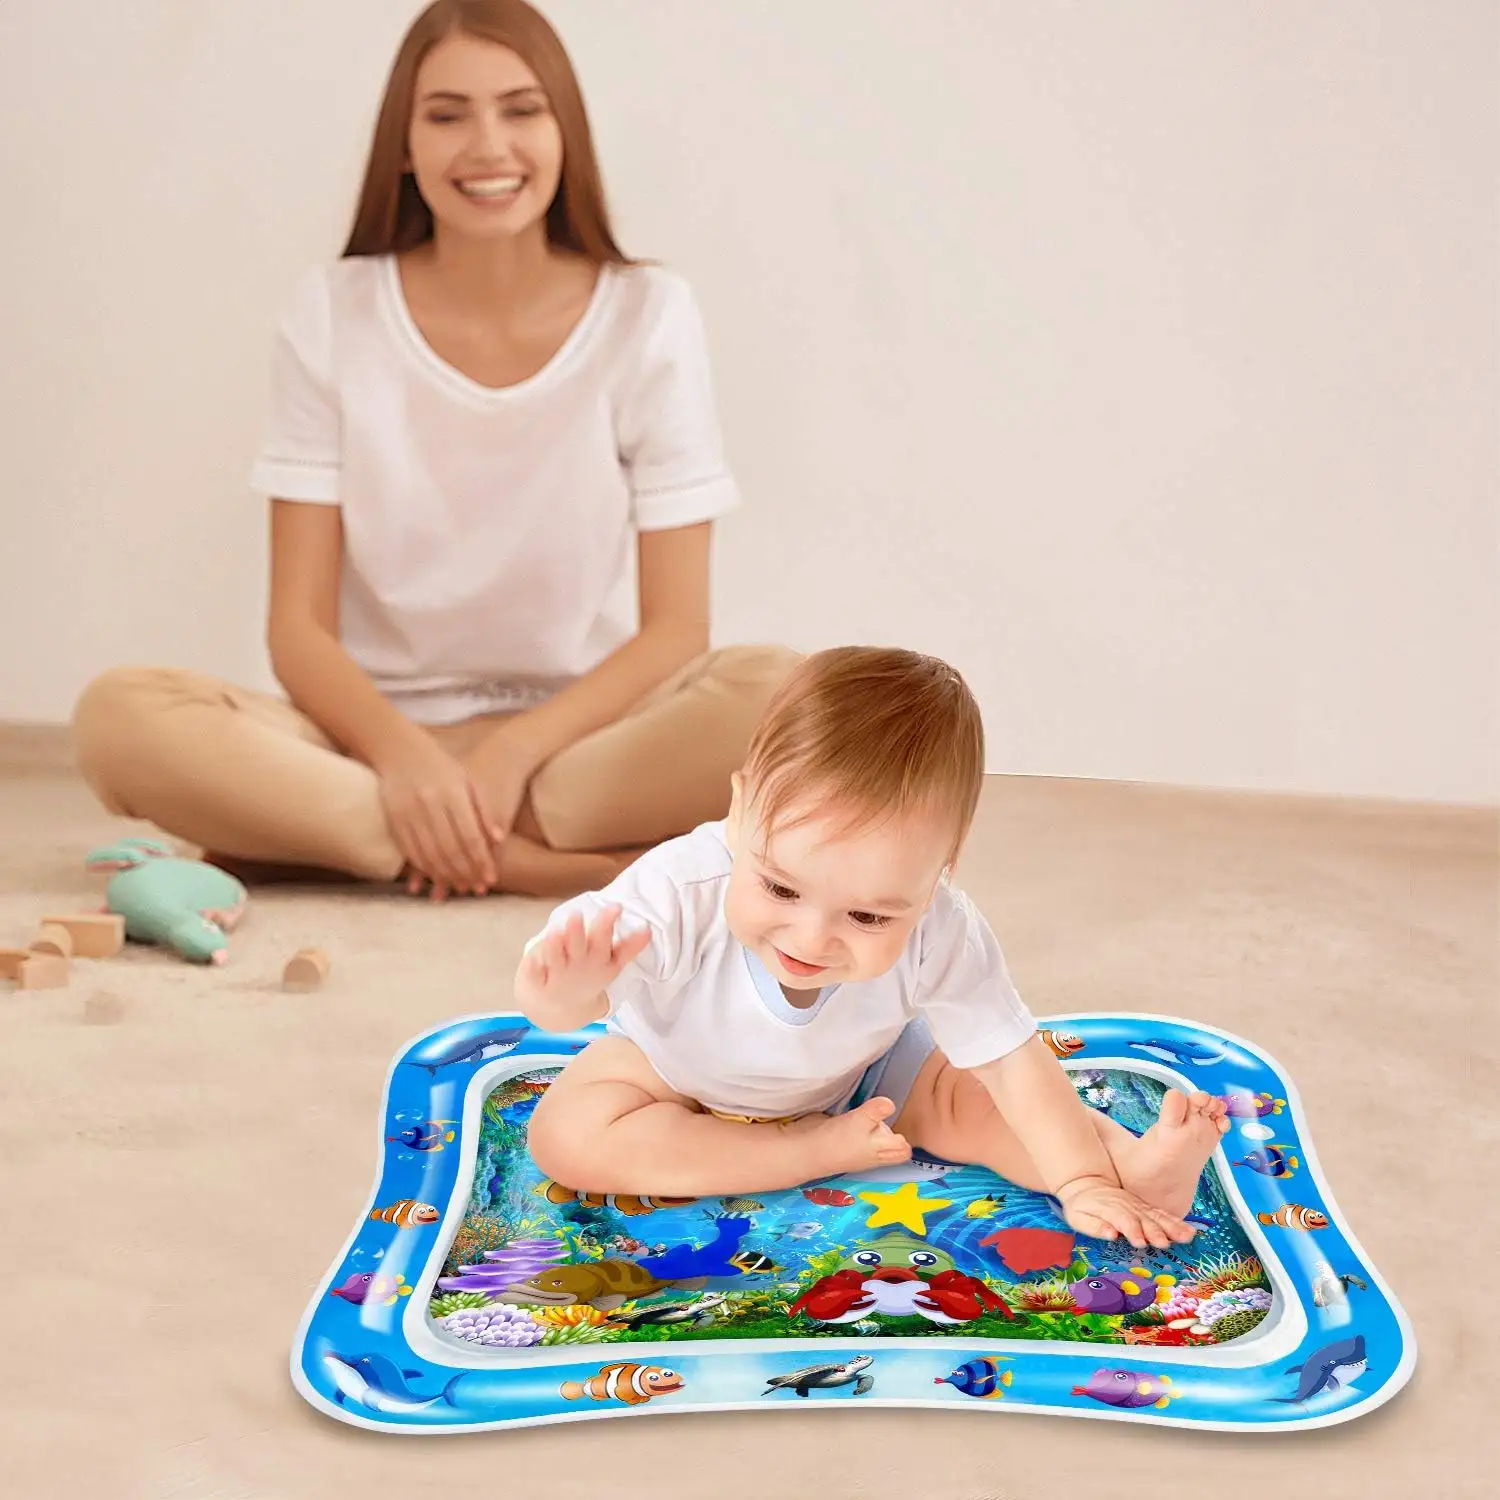 Tummy Time bébé tapis d'eau gonflable bébé tapis de jeu centre d'activité pour bébé enfants jouets pour bébé